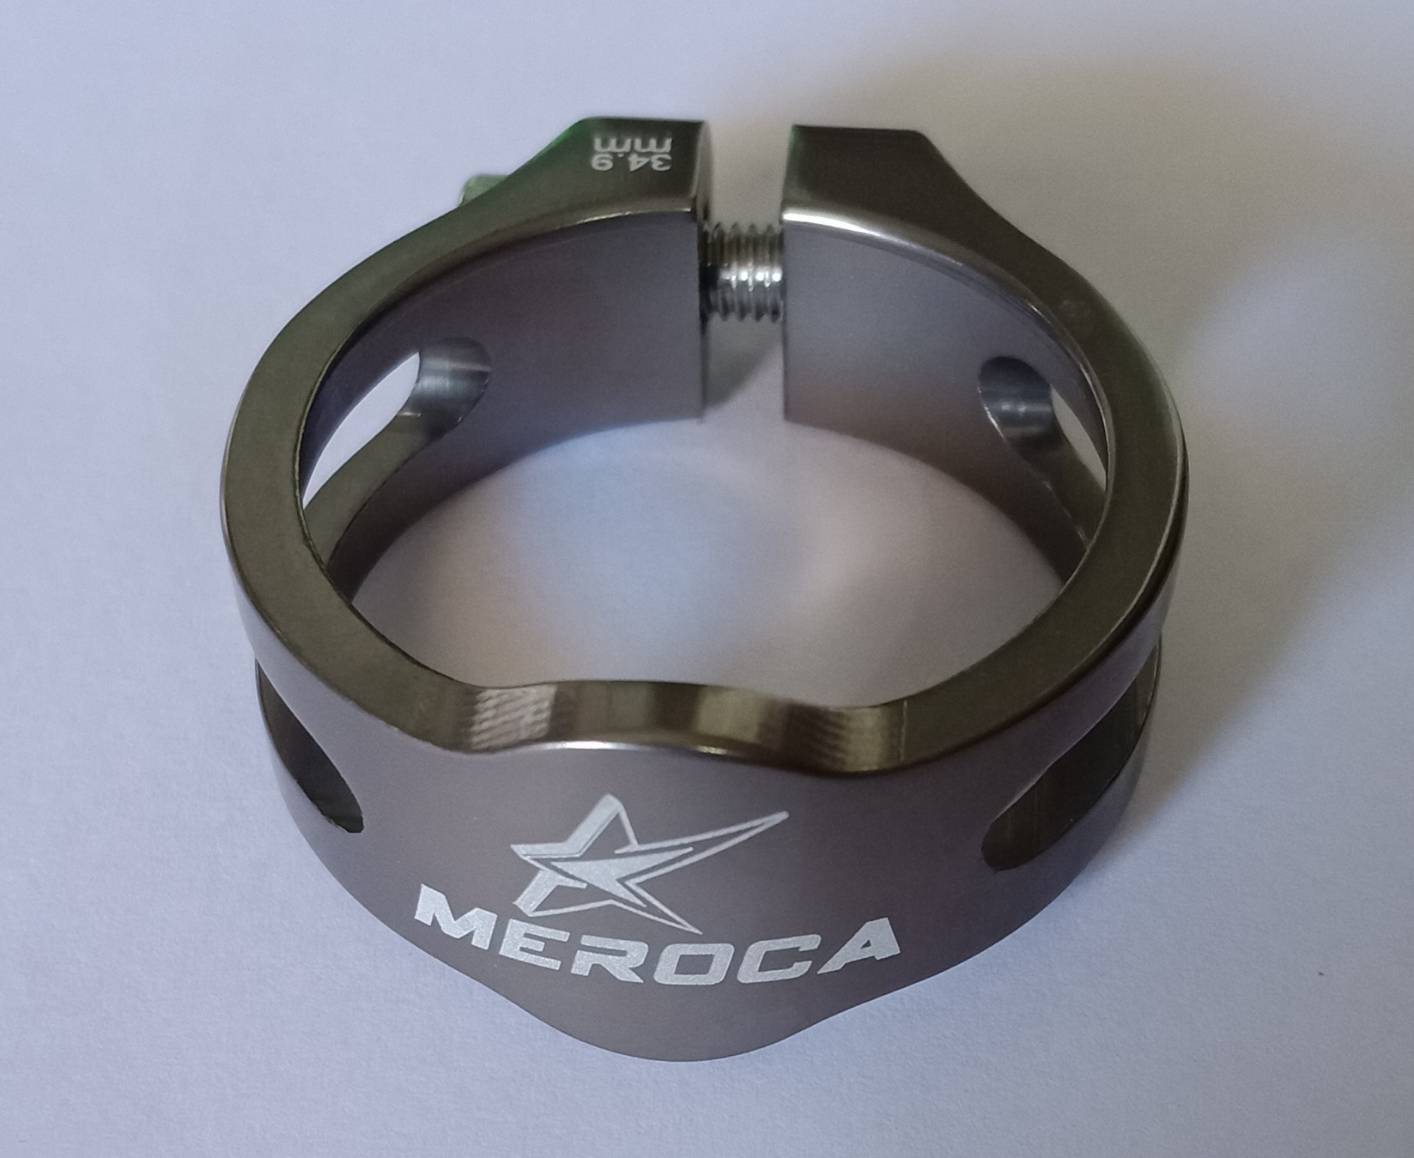 แหวนล็อคหลักอาน MEROCA อลูมิเนียมล็อคหลักอาน 34.9 แคล้มรัดหลักอาน อุปกรณ์จักรยาน (บรรจุ 1 ชิ้น)